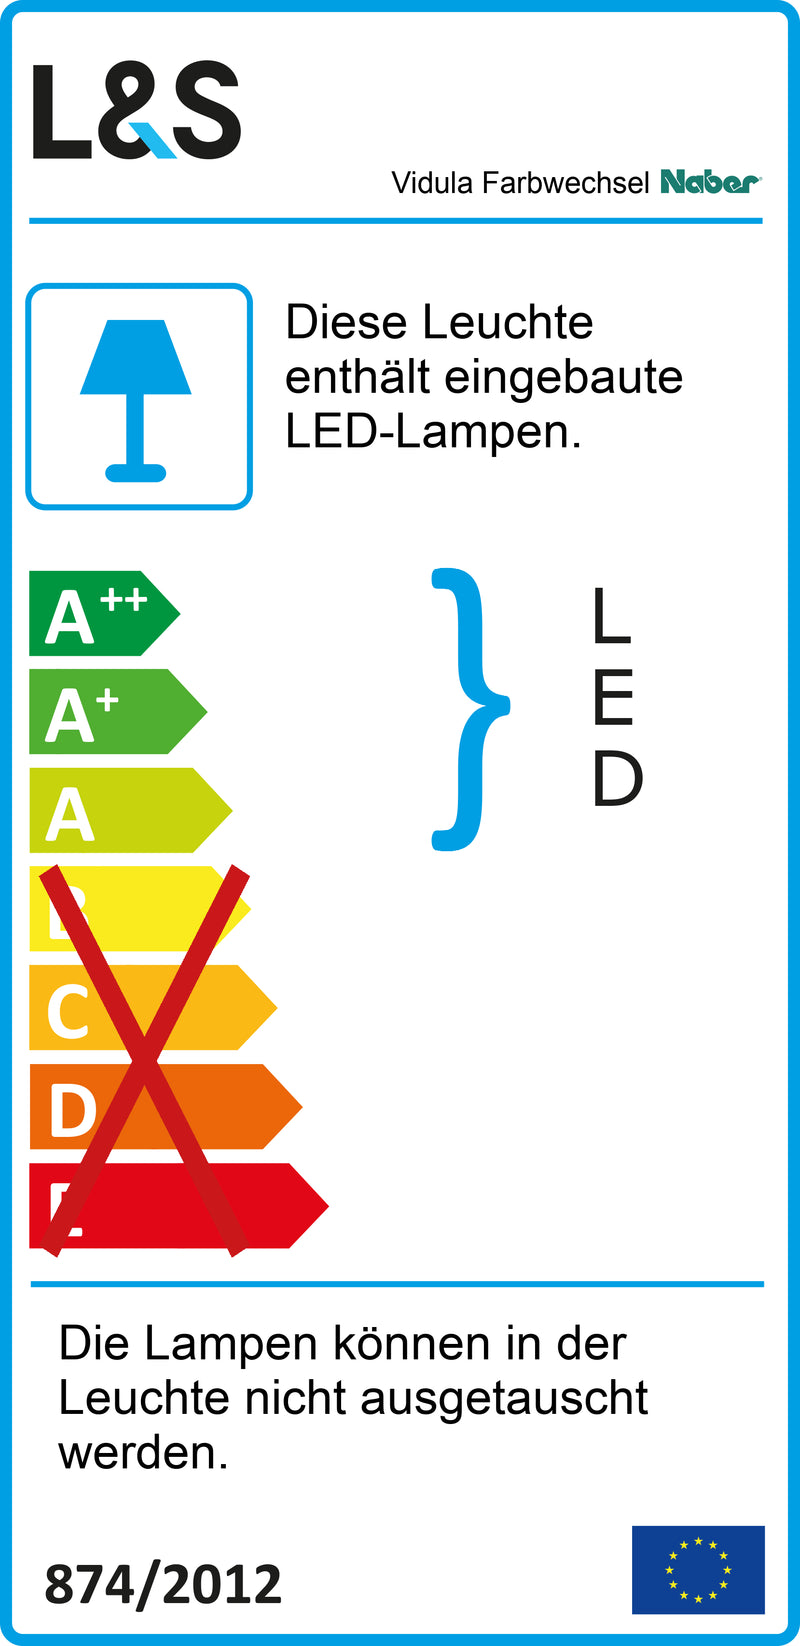 E-Label zu Zeichnung zu Vidula Farbwechsel LED als Variante L 1200 mm, schwarz matt von Naber GmbH in der Kategorie Lichttechnik in Österreich auf conceptshop.at